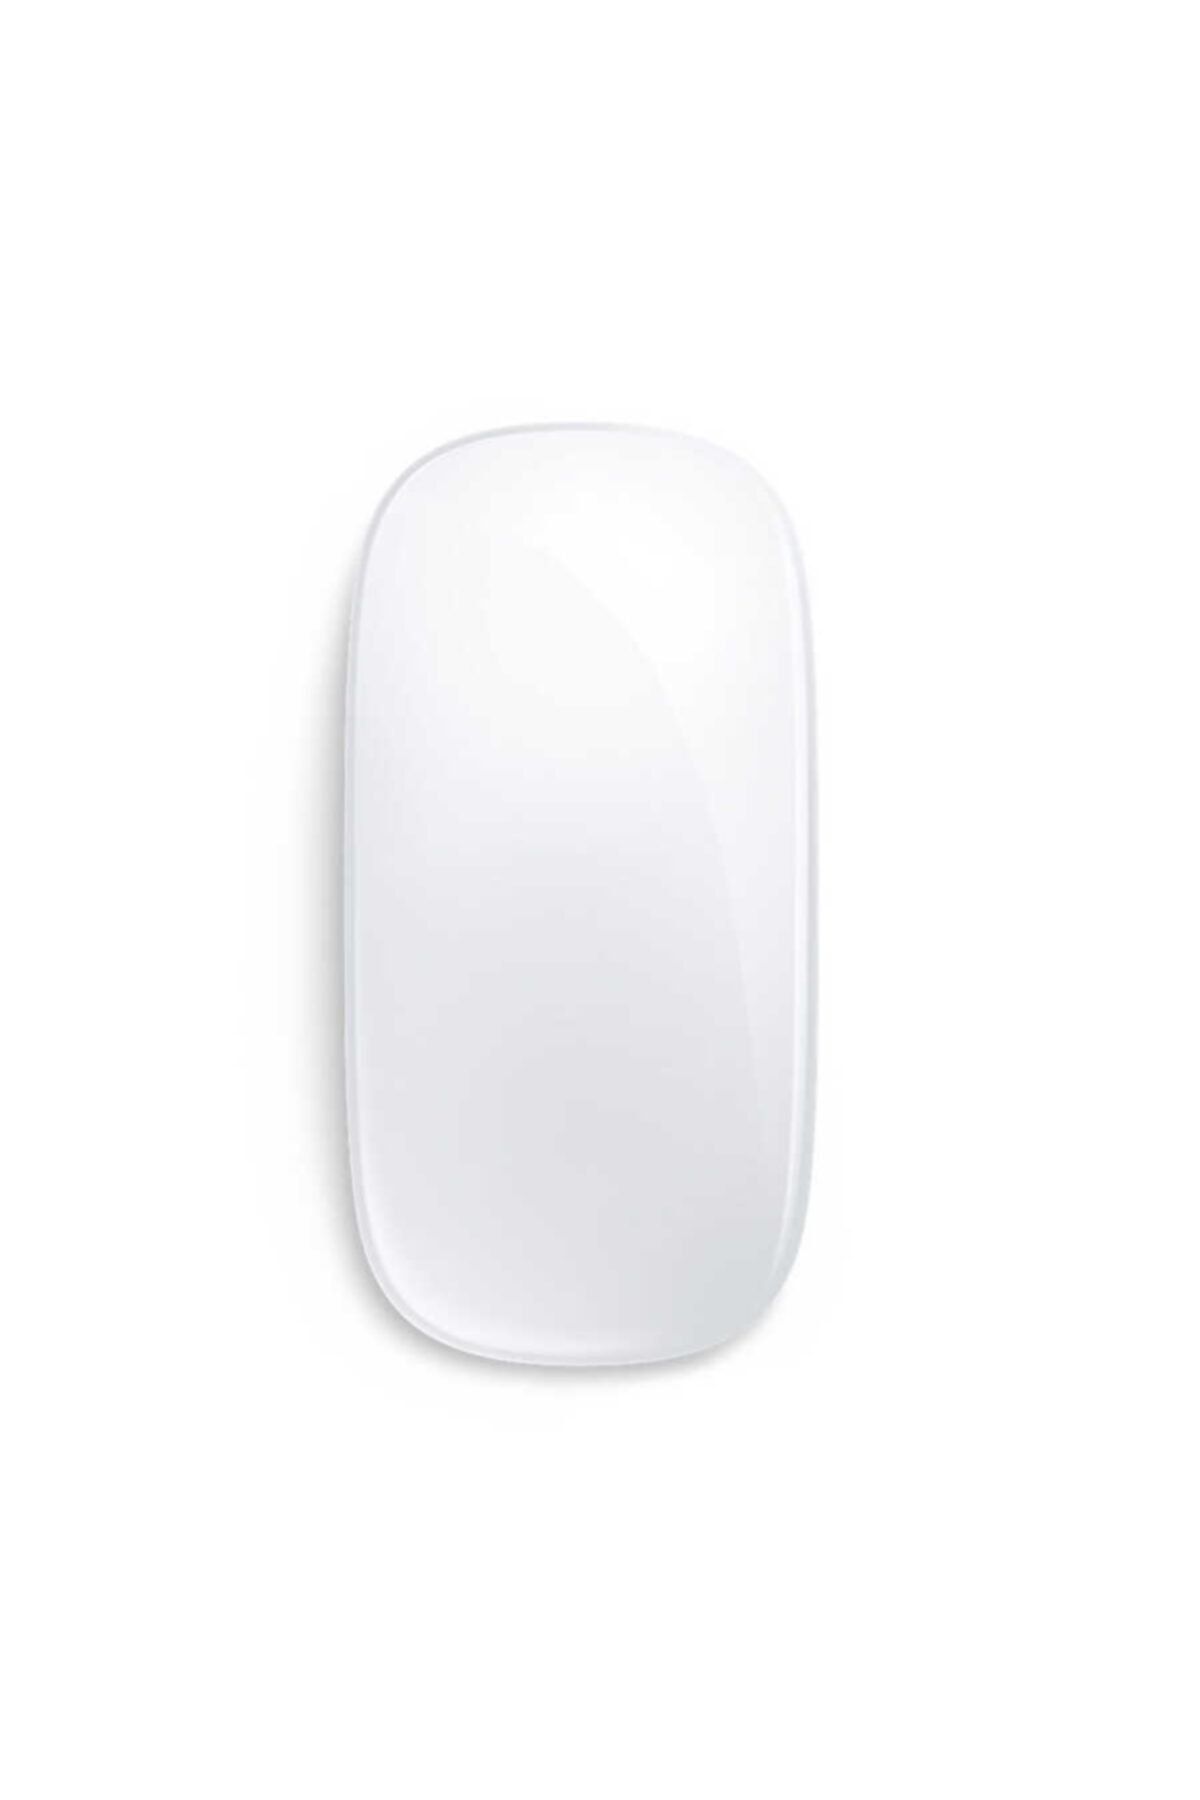 CoverStation Wireless 2.4 Mouse Fare Macbook Pro (13 Inç, 2010) Uyumlu Lisanslı Kablousuz Bağlantı